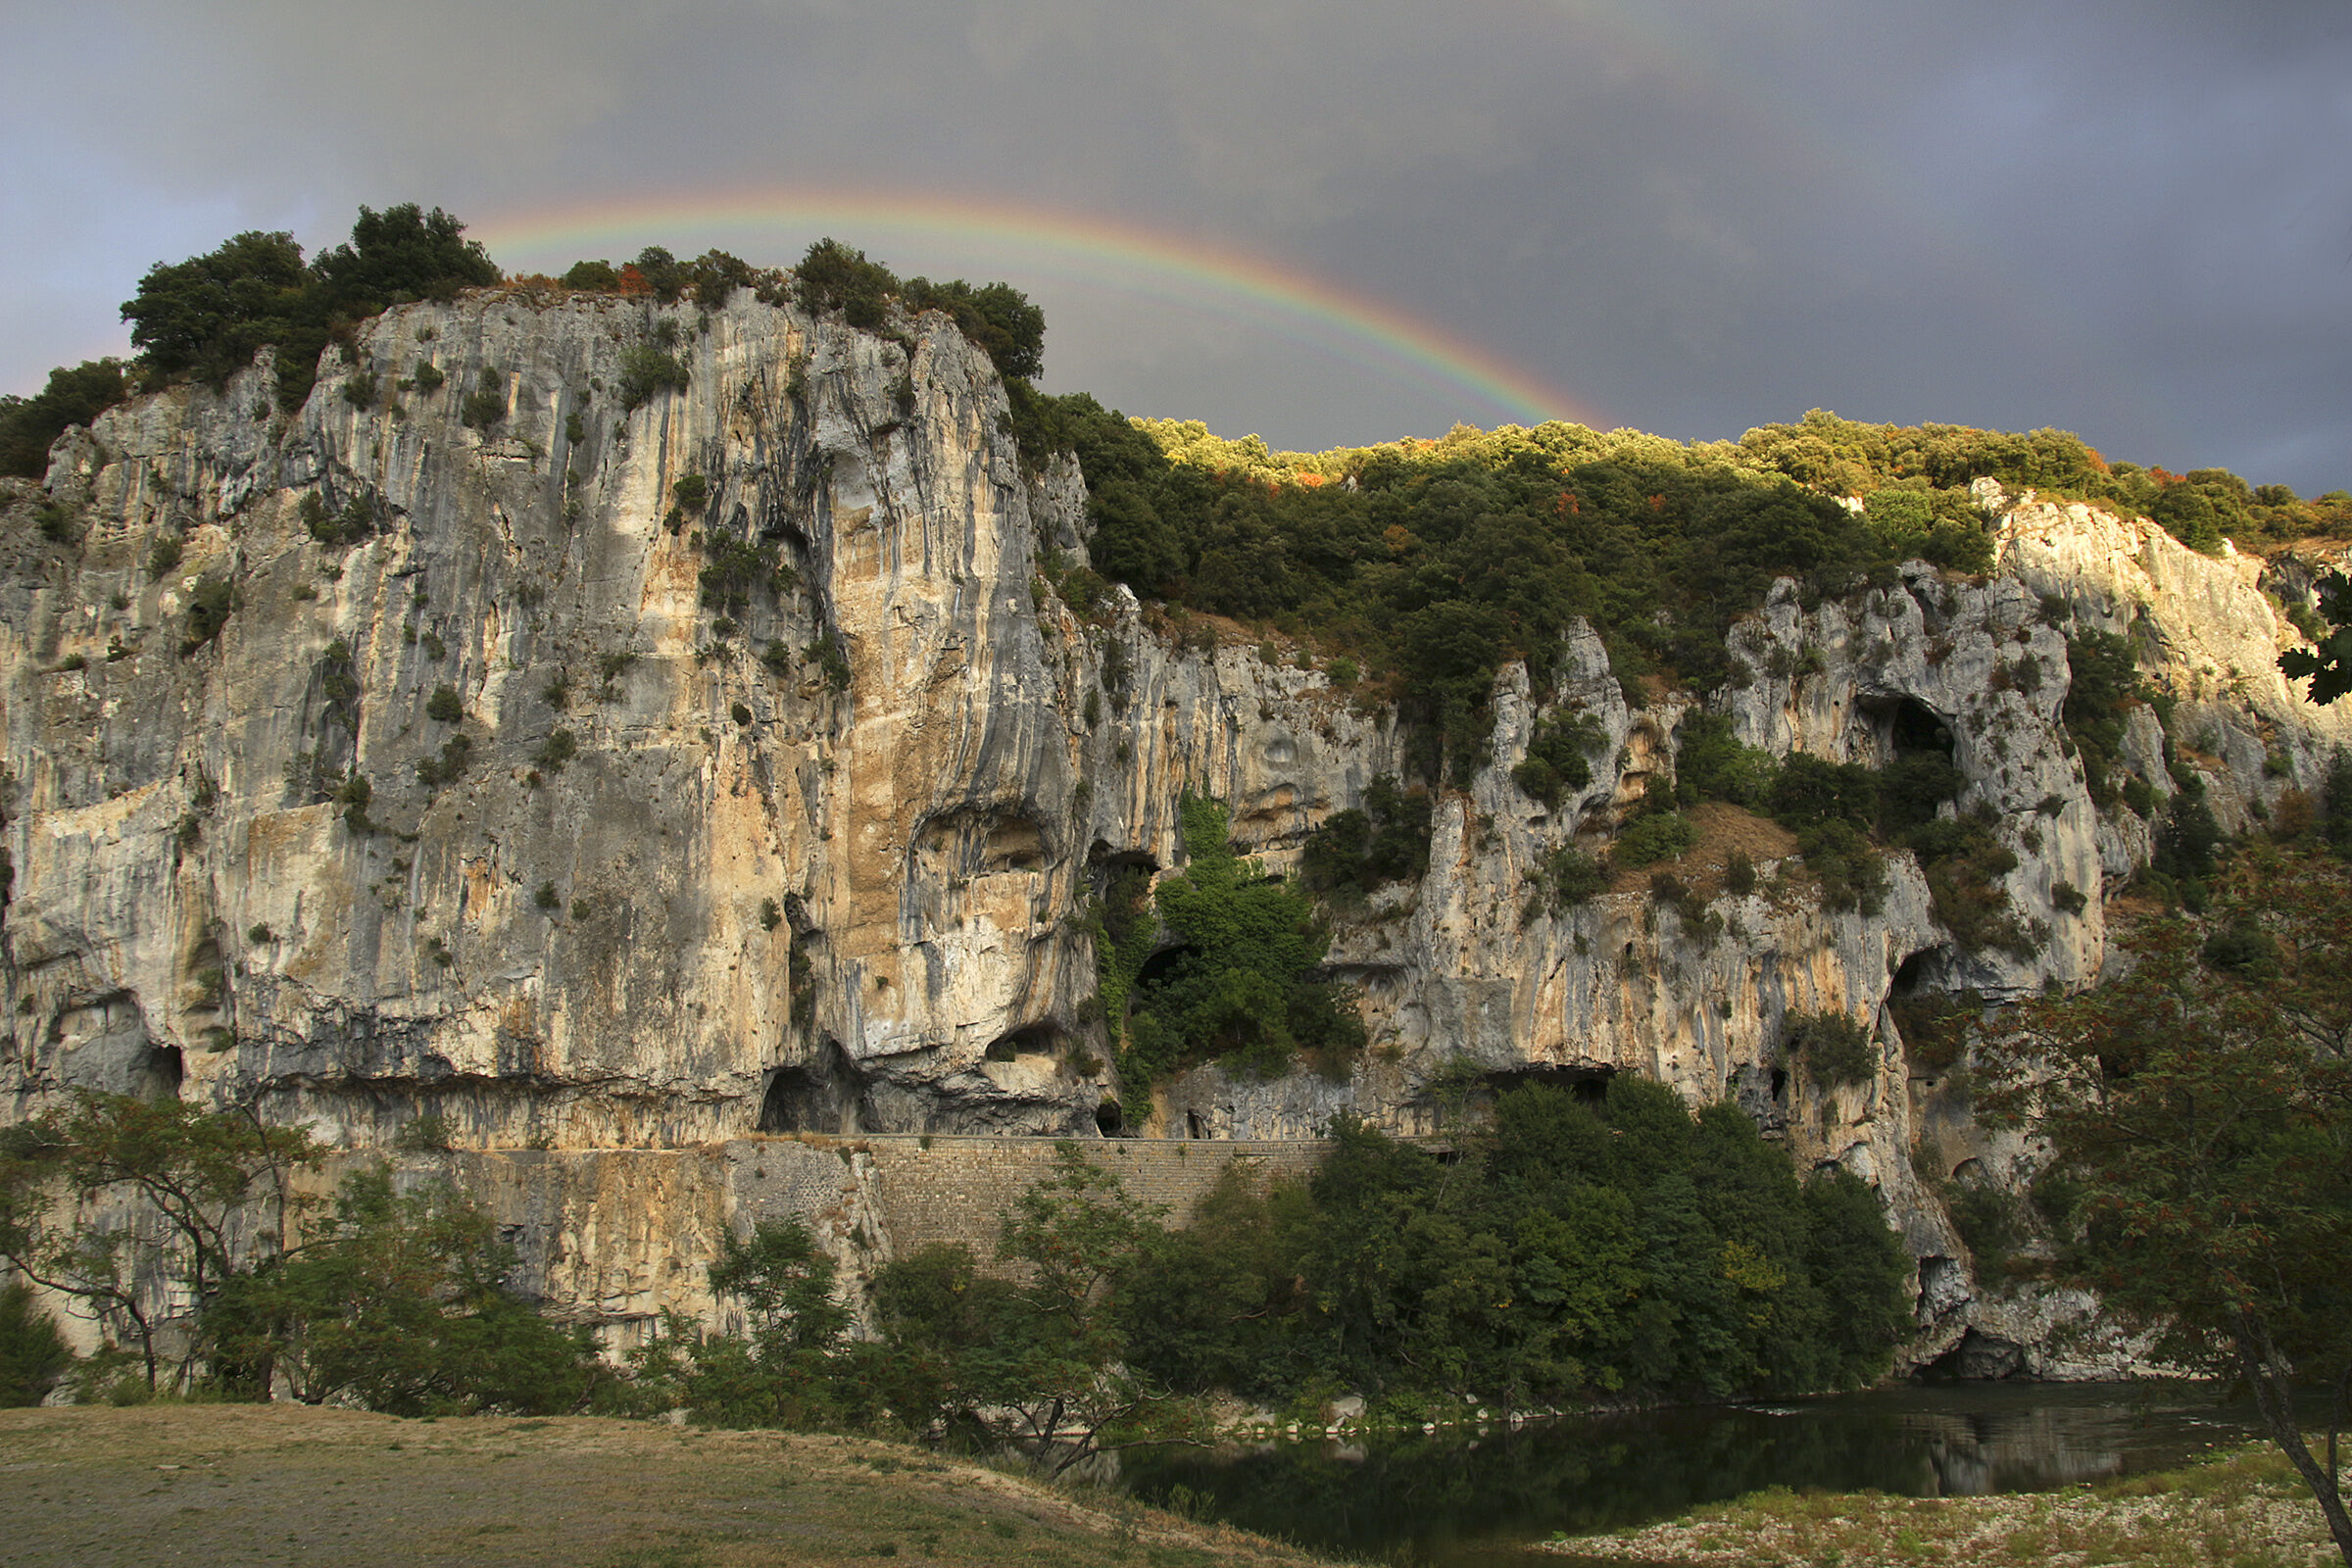 Ardeche Gorges - Rainbow...